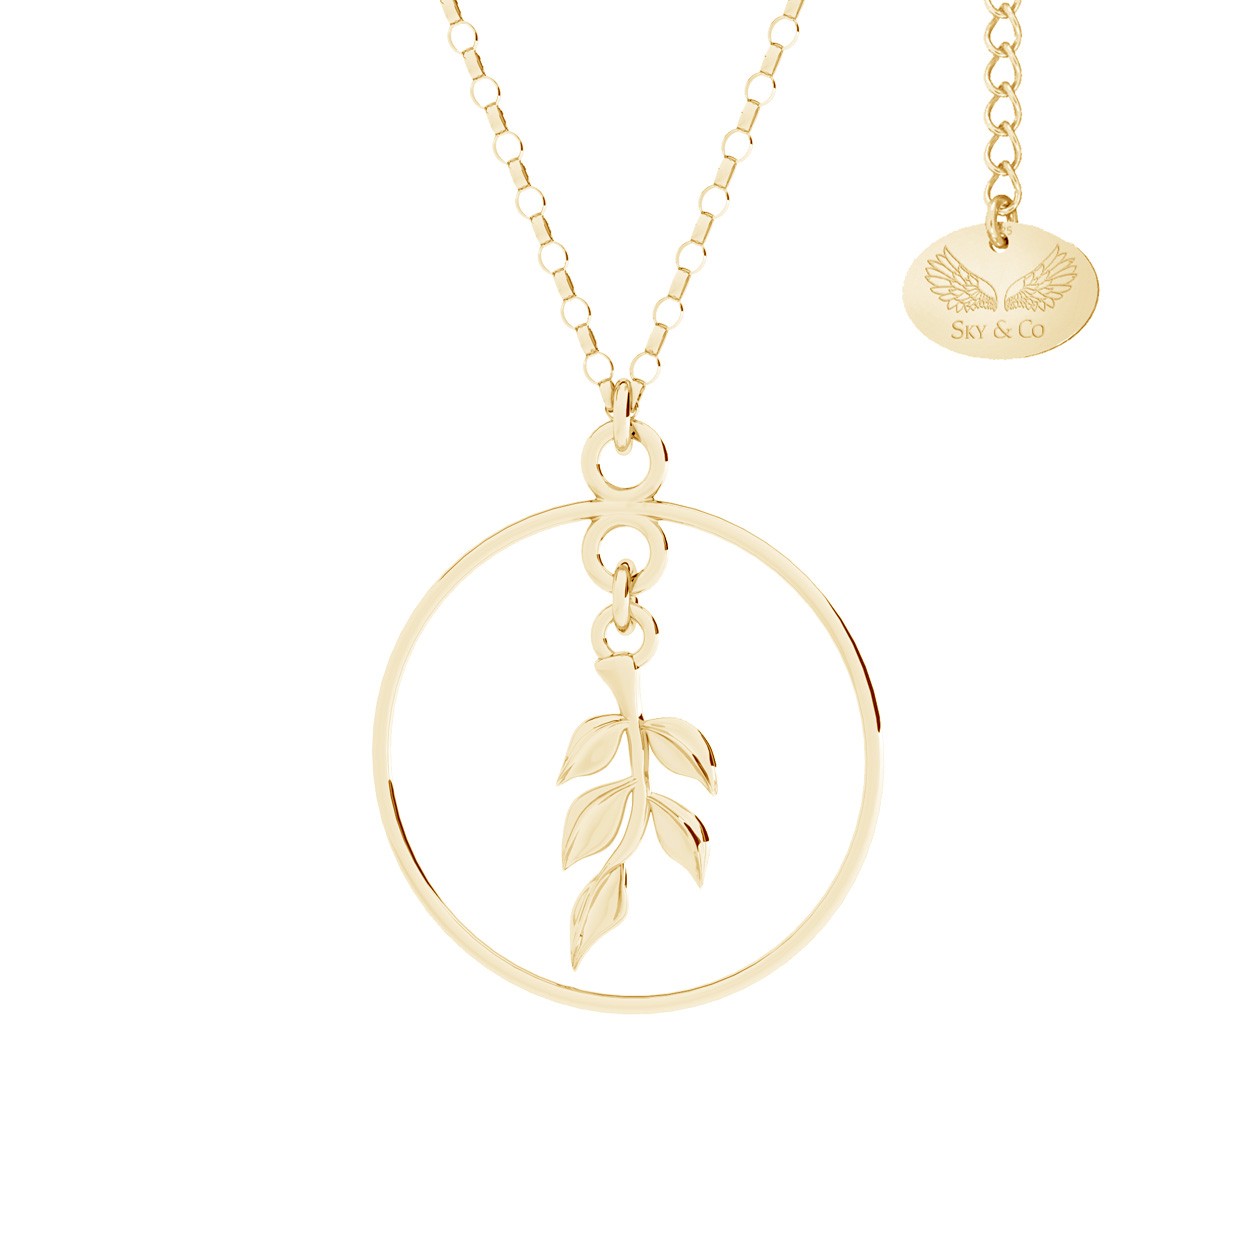 Branch necklacer - Voar, Sky&Co, sterling silver 925